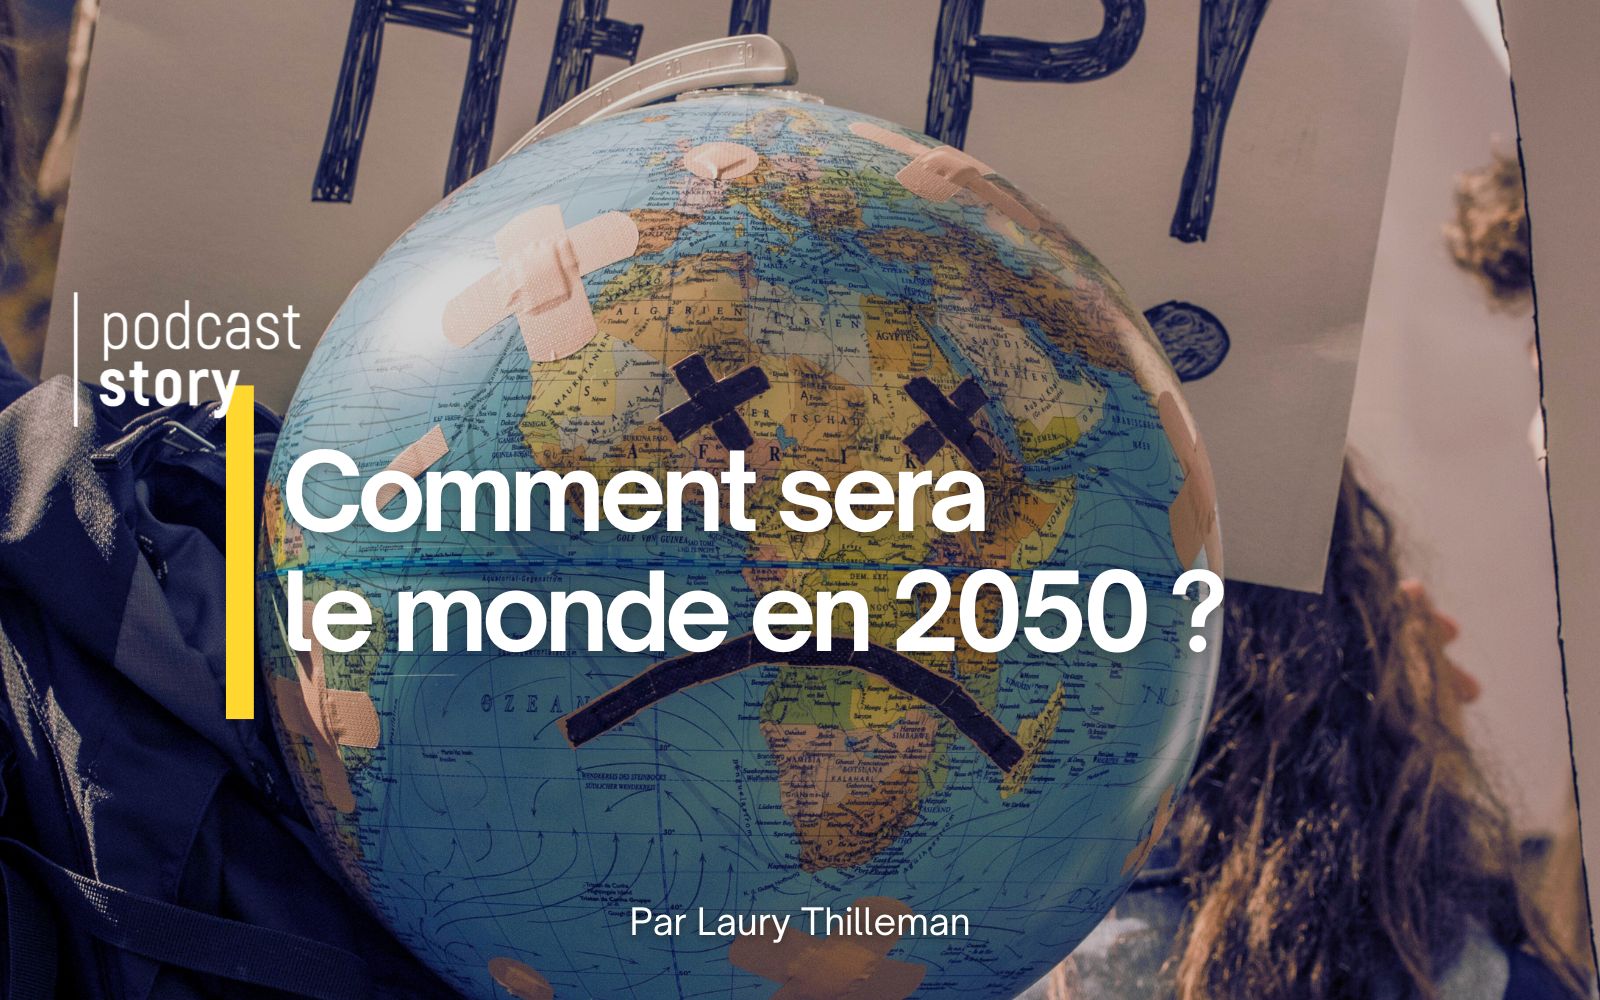 COMMENT SERA LE MONDE EN 2050 ? Par Laury Thilleman